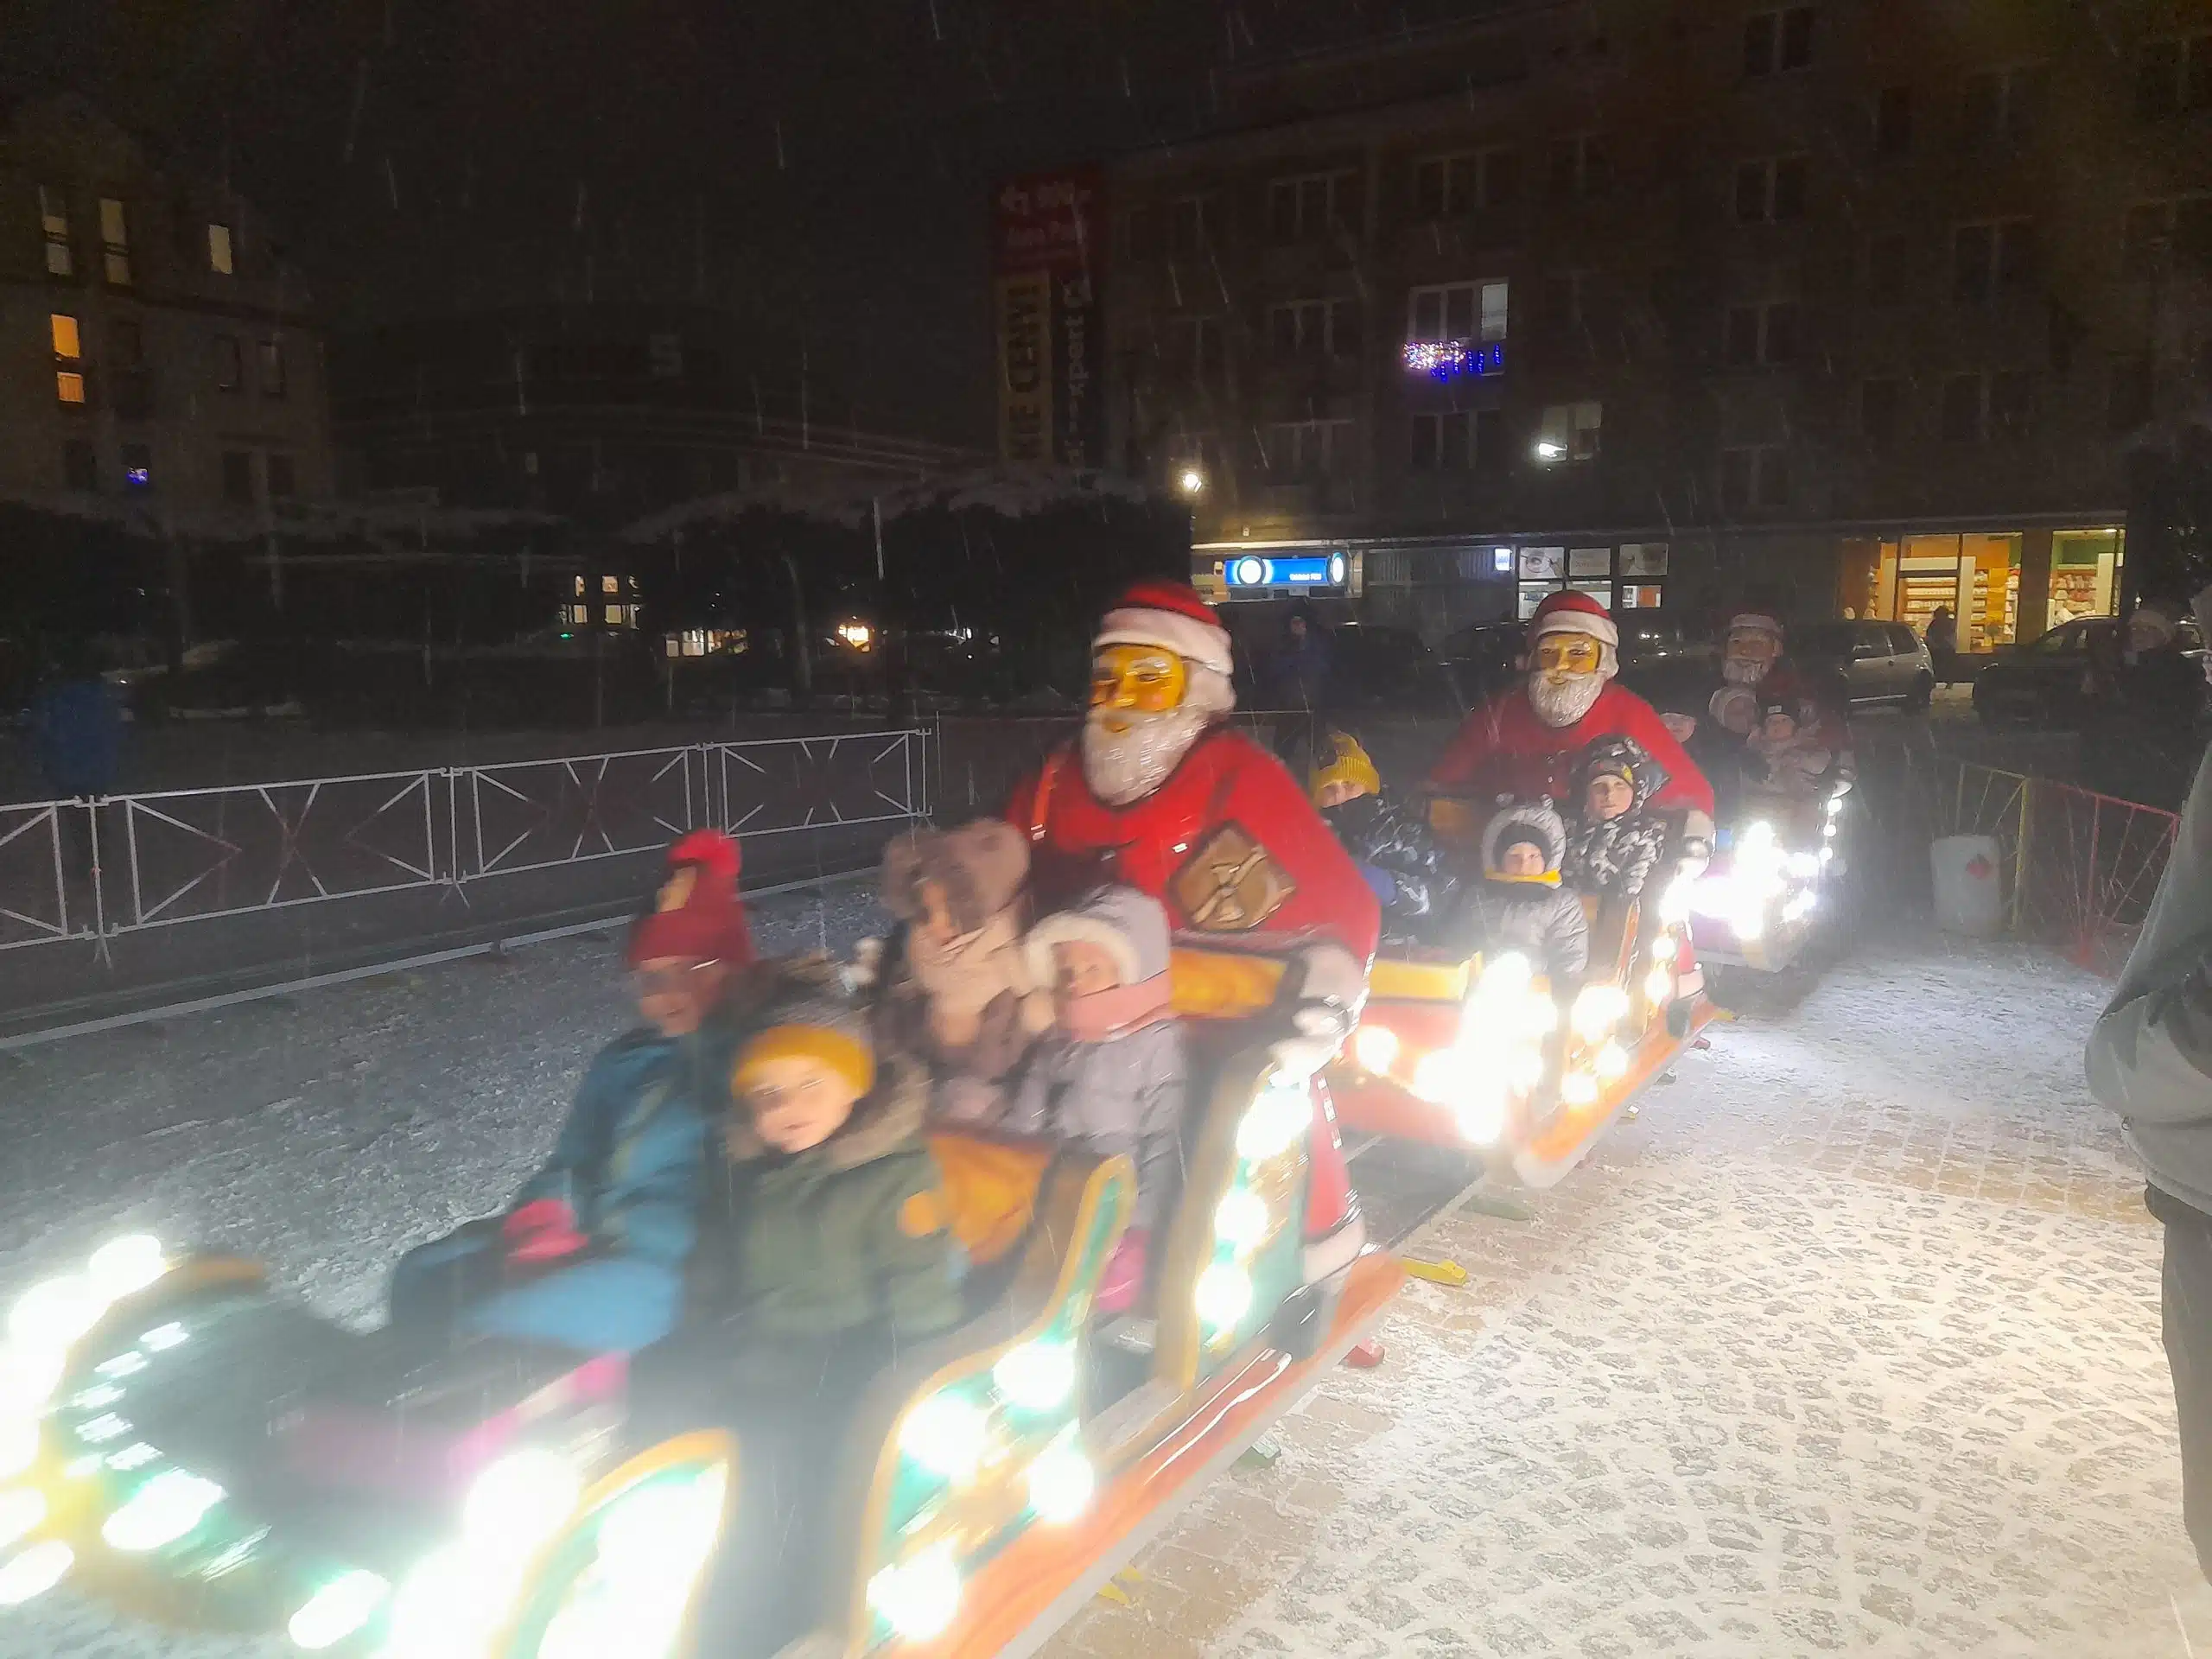 Świąteczna kolejka Megaland z postaciami Mikołajów oświetlona kolorowymi światłami, tworząca radosną atmosferę zimowych festynów i imprez.